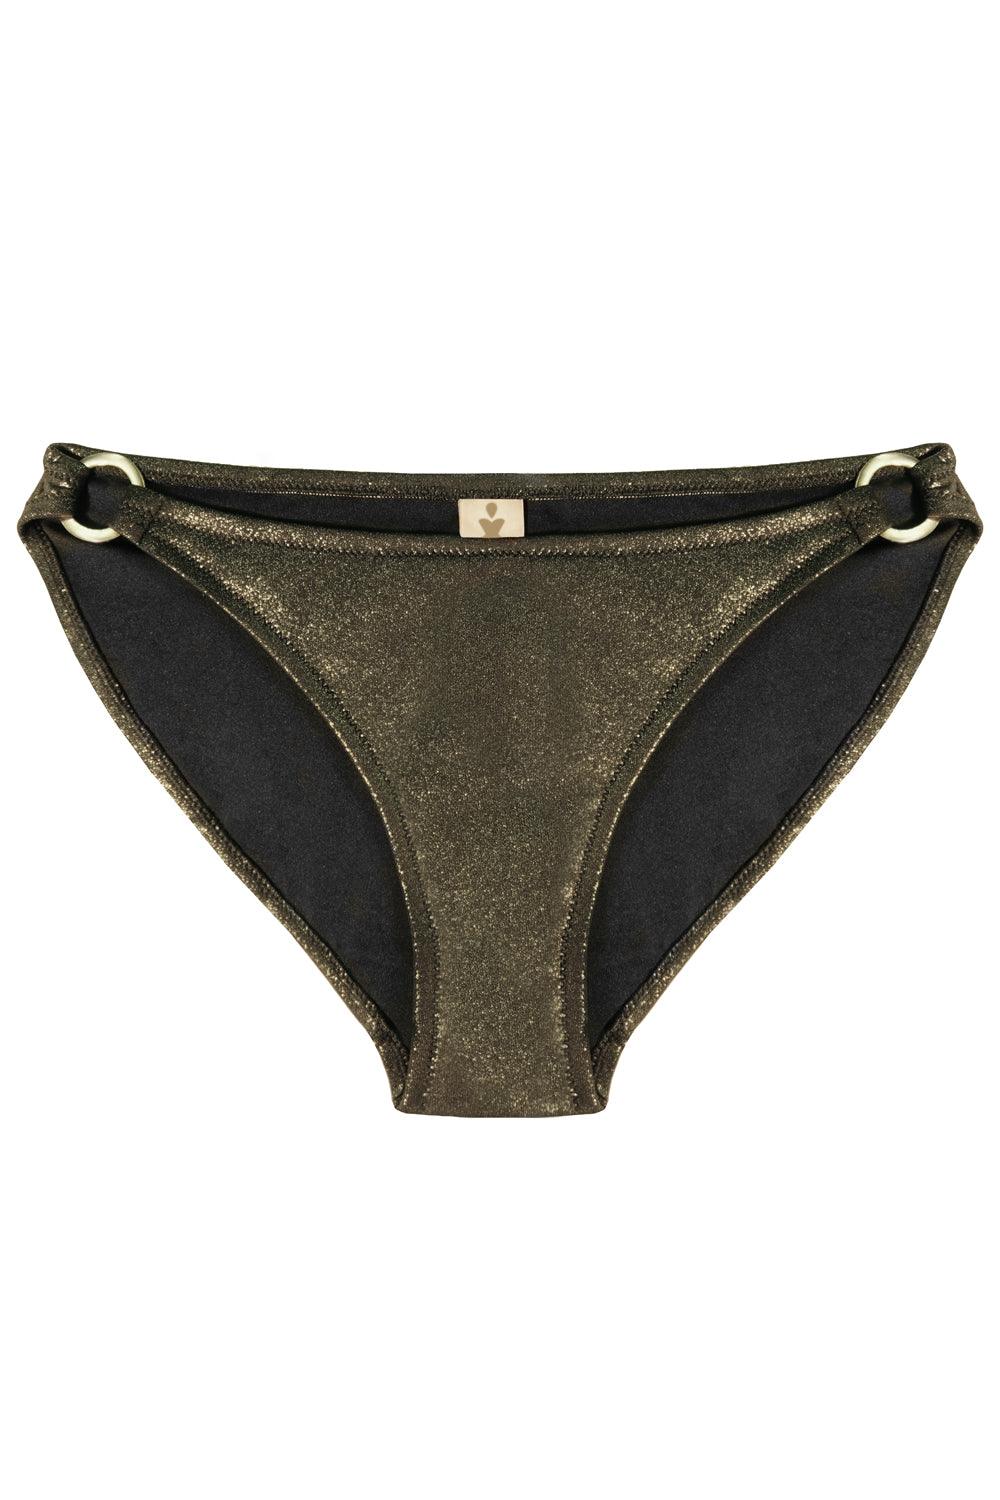 Titaniya Gold Black bikini bottom - Bikini bottom by yesUndress. Shop on yesUndress